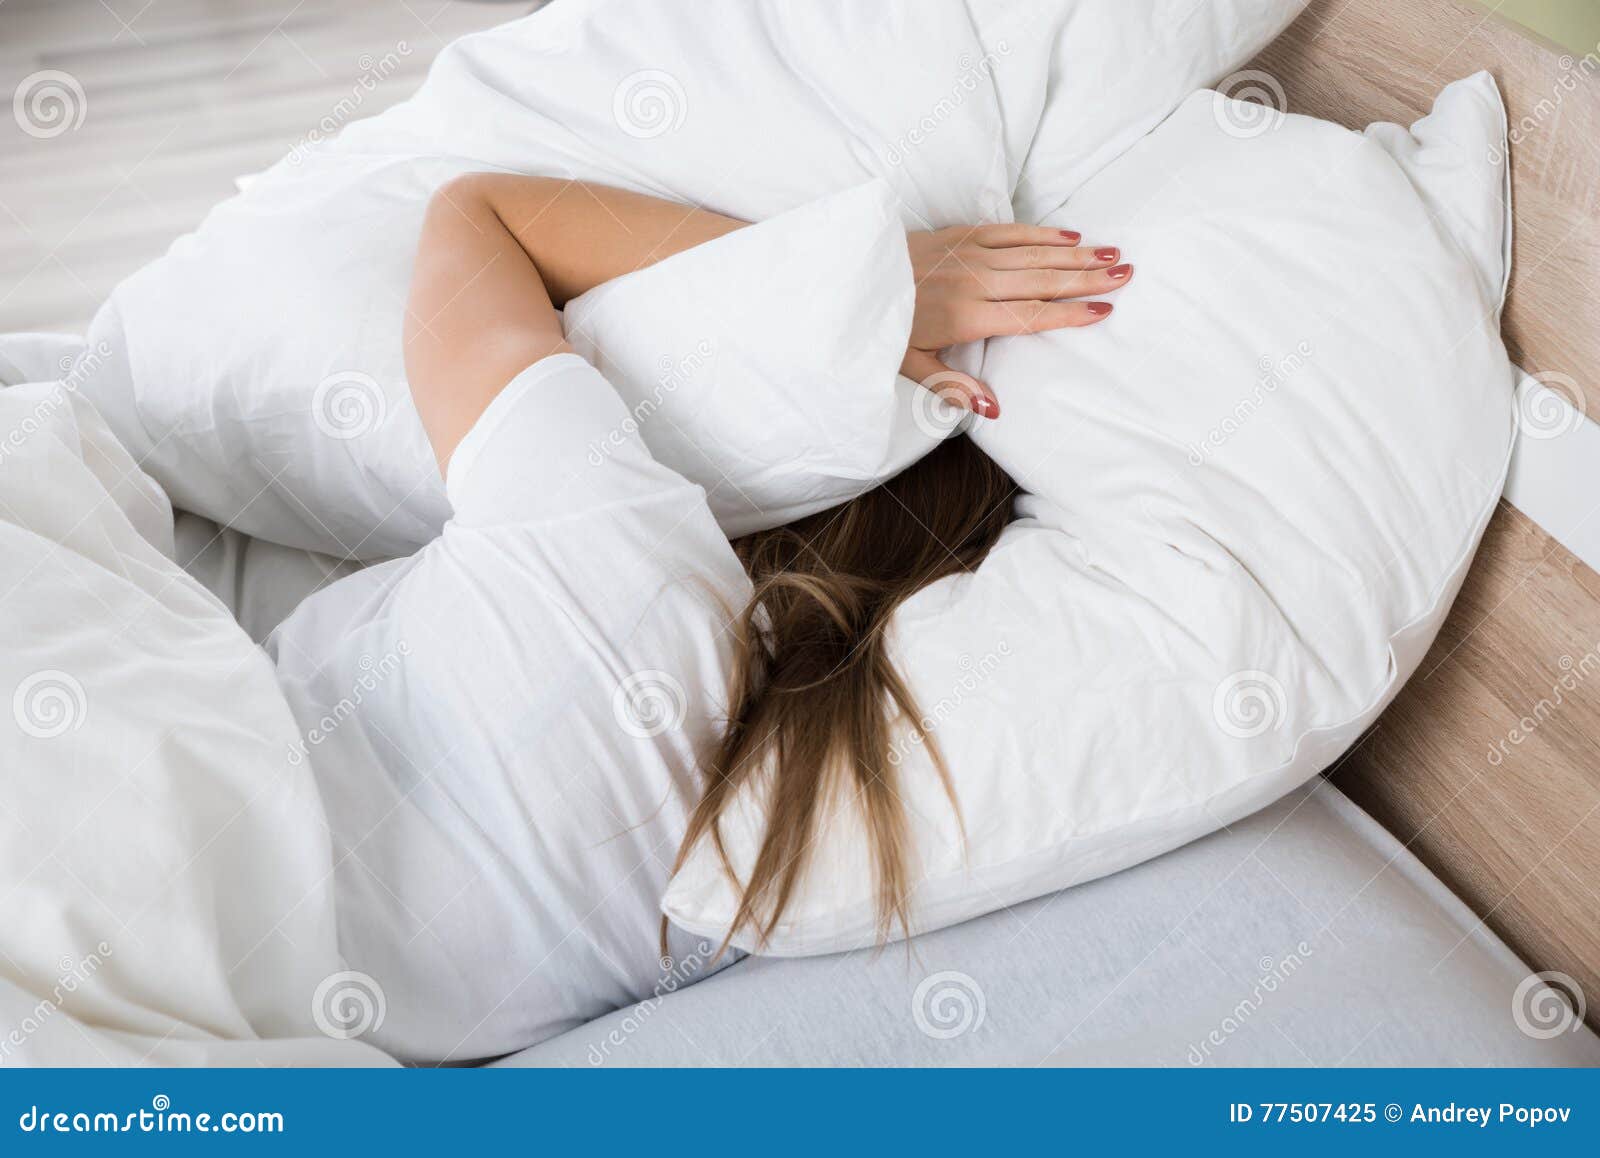 Спать головой в подушку. Оля Болгурцева. Девушка лицом в подушку. Девушка с подушкой на голове. Спать лицом в подушку.